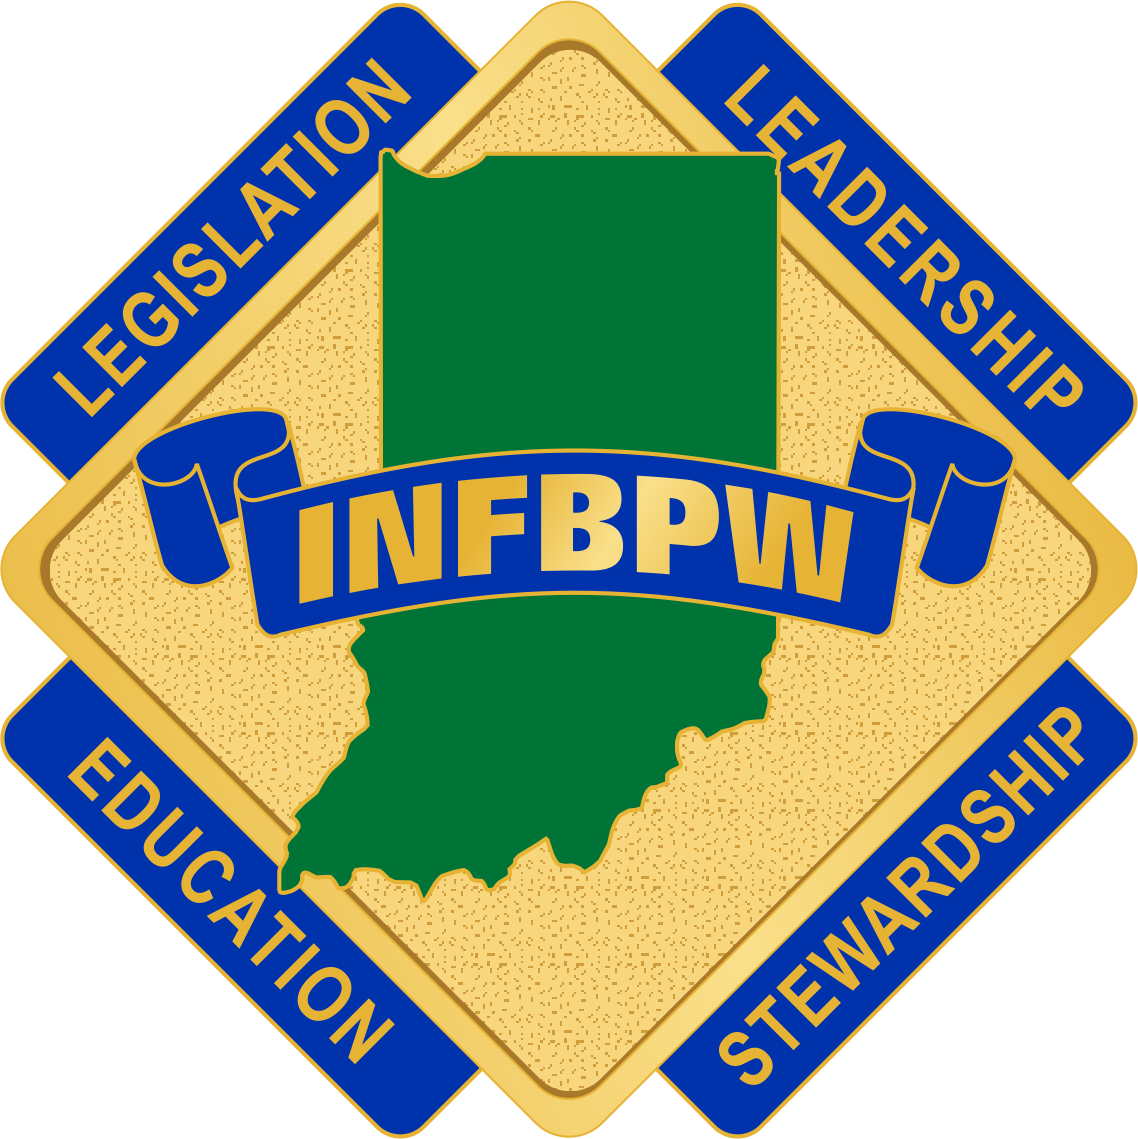 INFBPW_logo.png